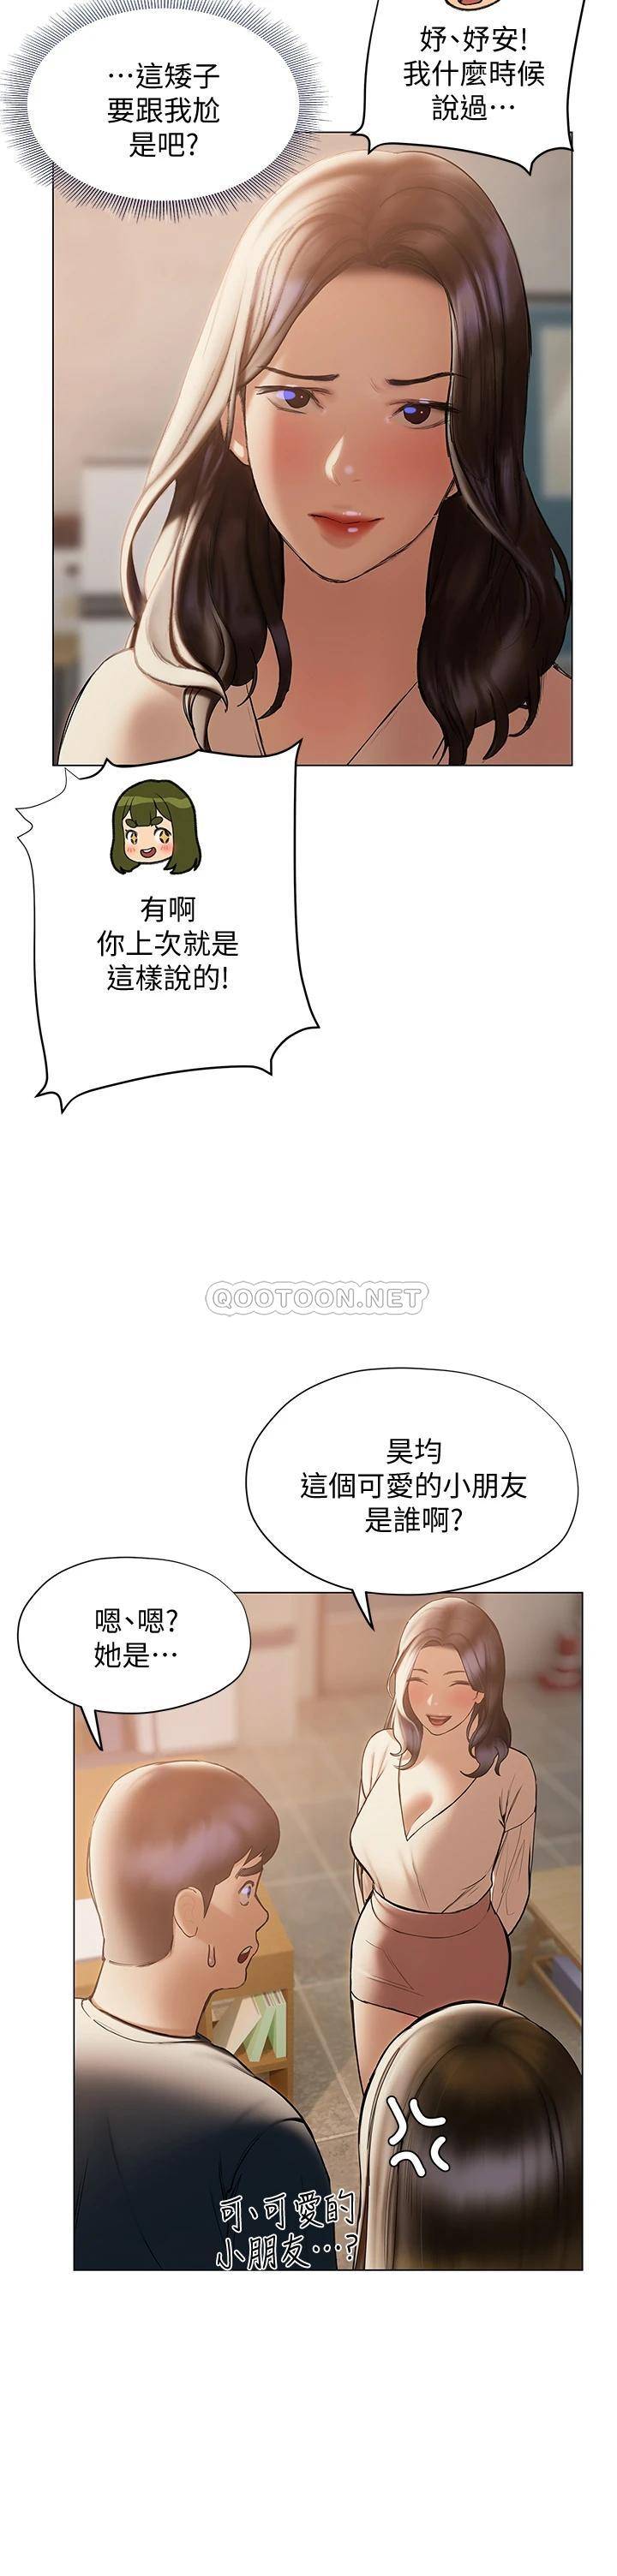 韩国污漫画 終曖昧結 第30话昊均争夺战 22